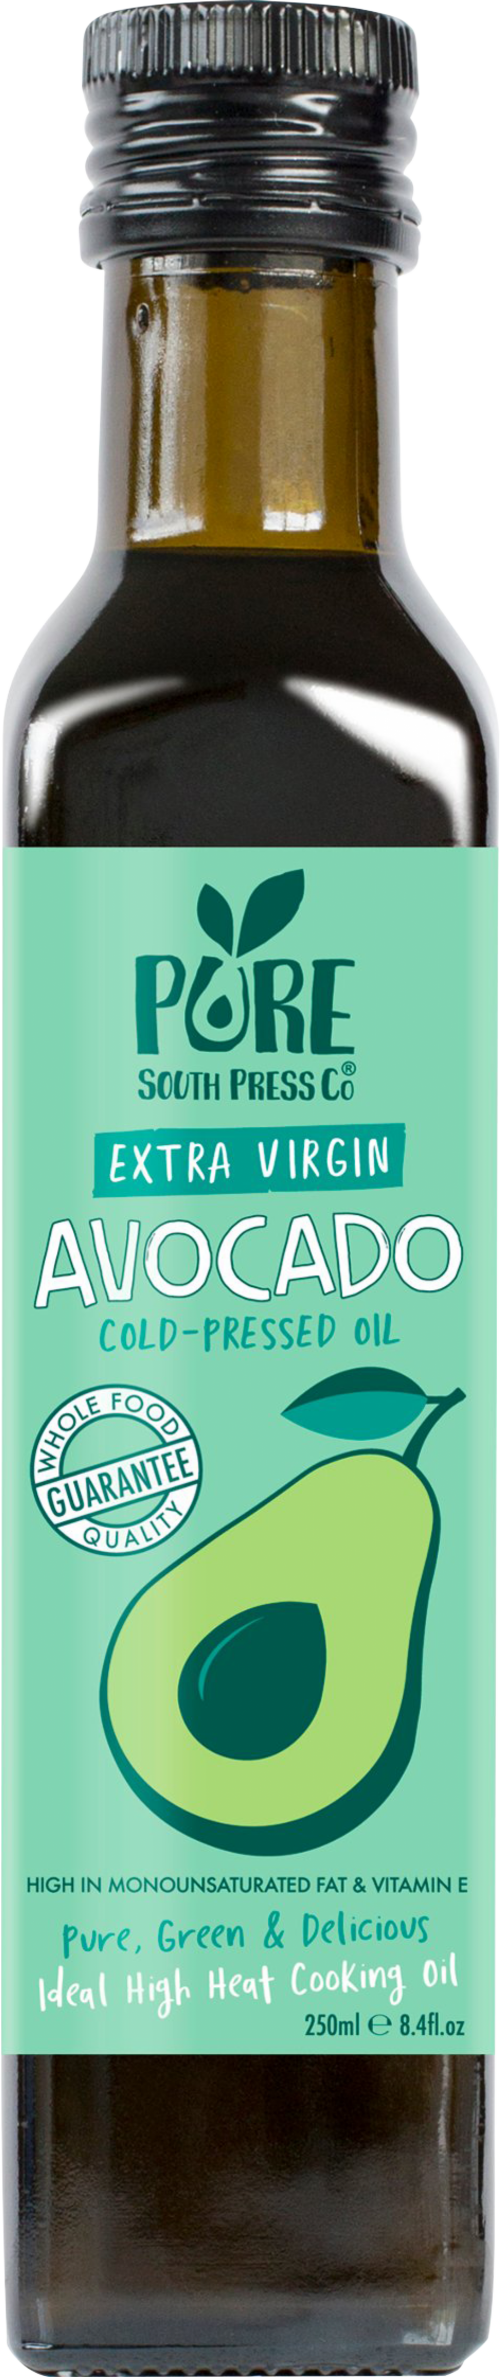 PURE SOUTH PRESS CO. Extra Virgin Avocado Oil 250ml